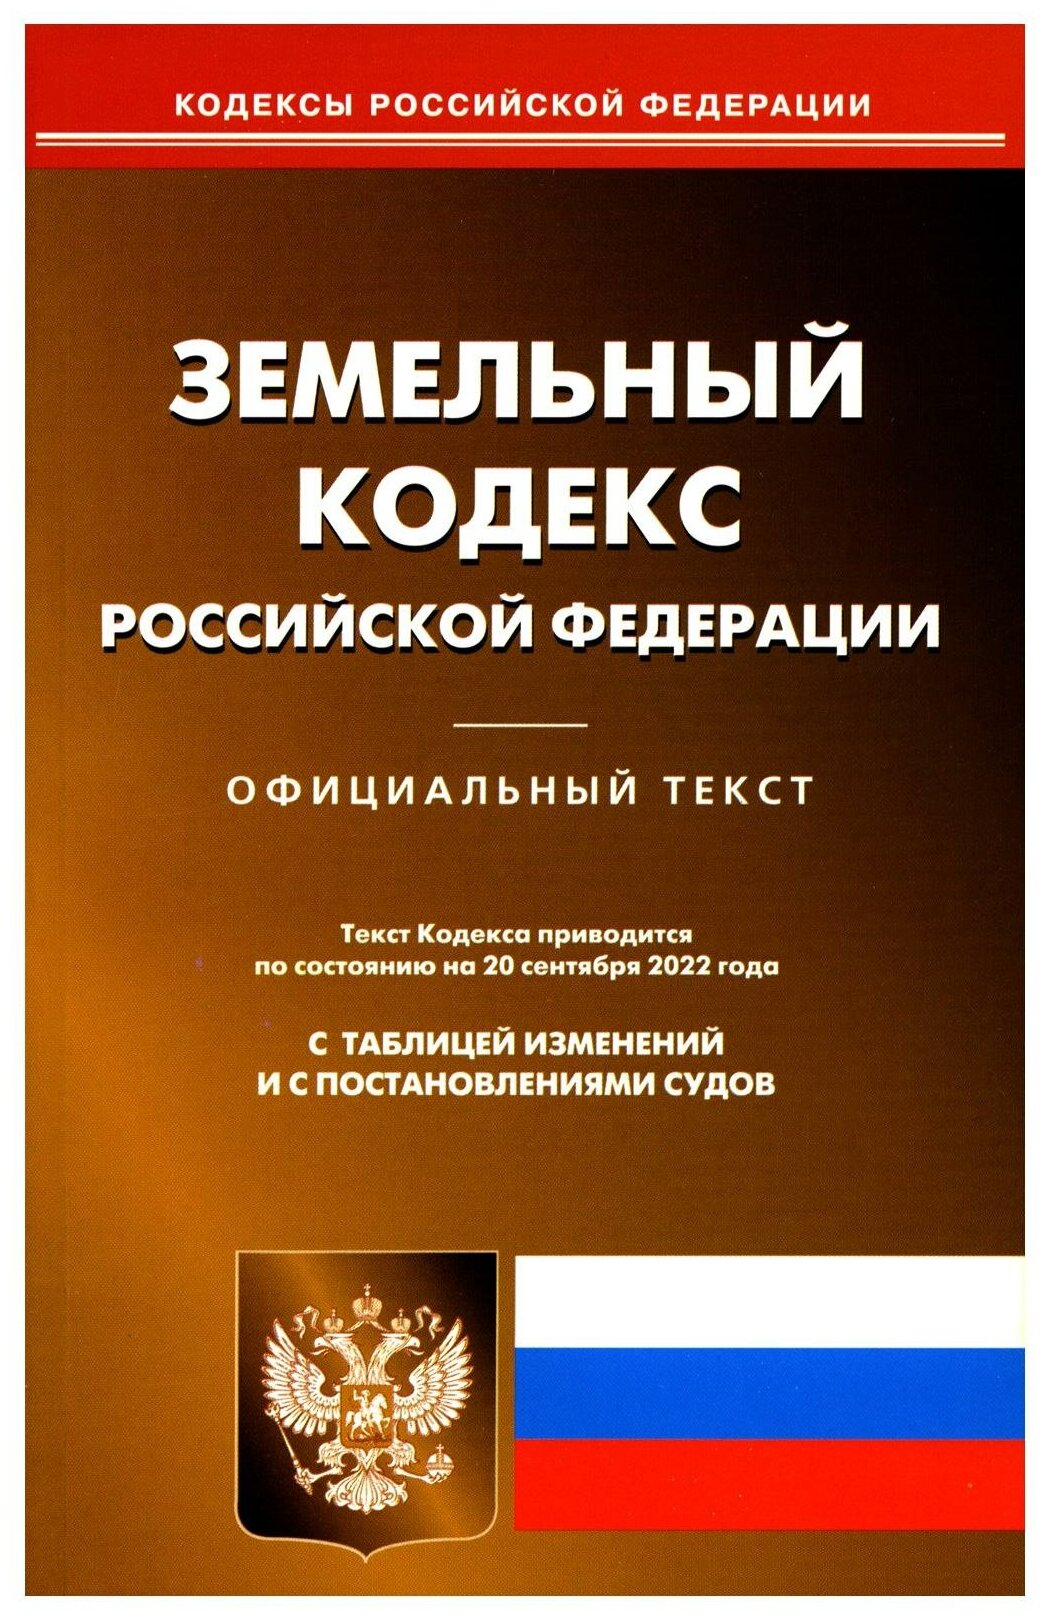 Земельный кодекс Российской Федерации По состоянию на 20 сентября 2022 года Официальный текст С таблицей изменений и с постановлениями судов - фото №1